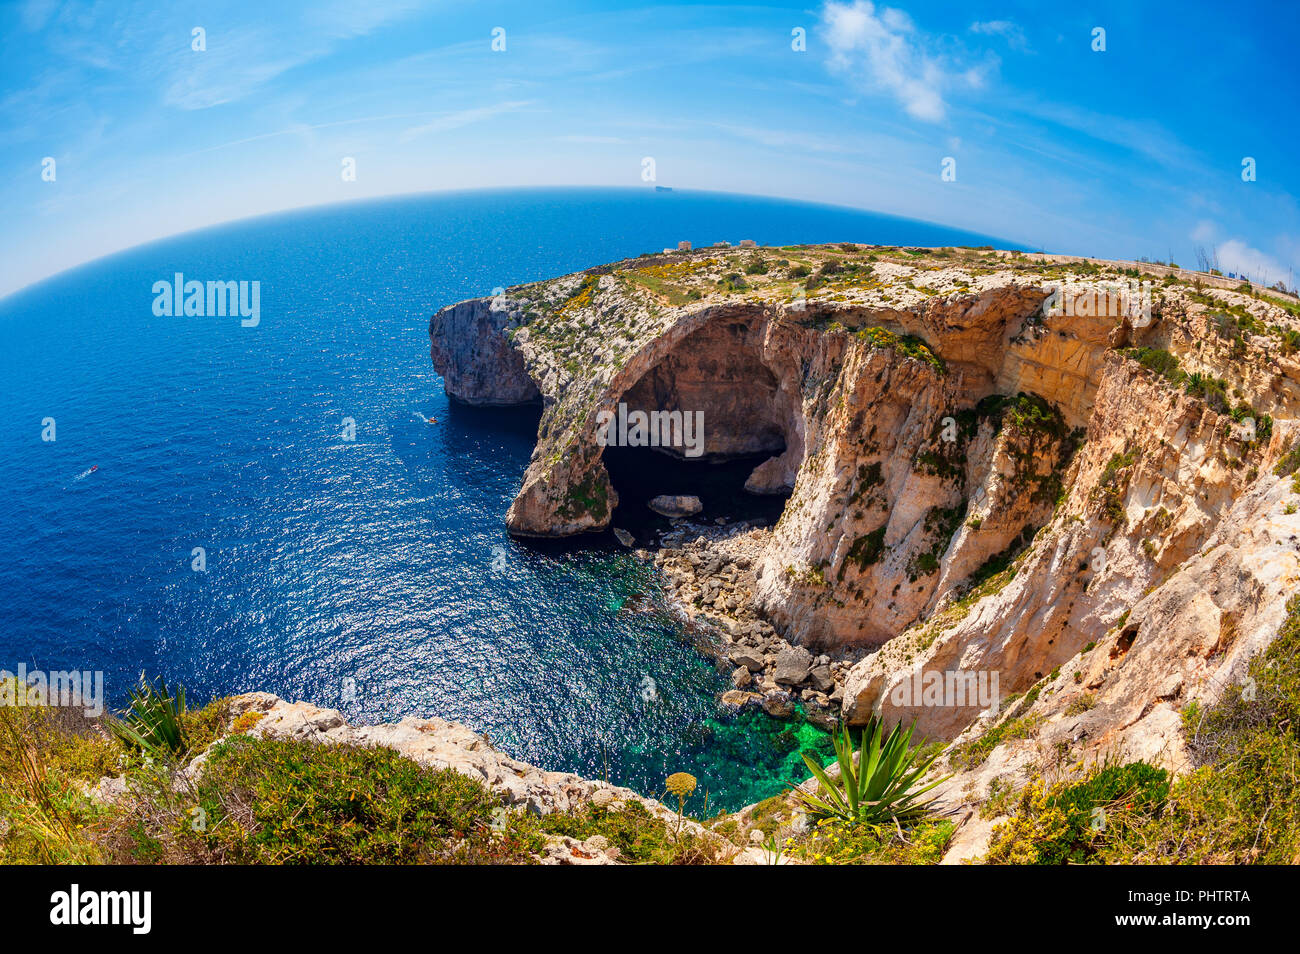 Fischaugenobjektiv, die Blaue Grotte in Malta im Frühjahr Stockfoto